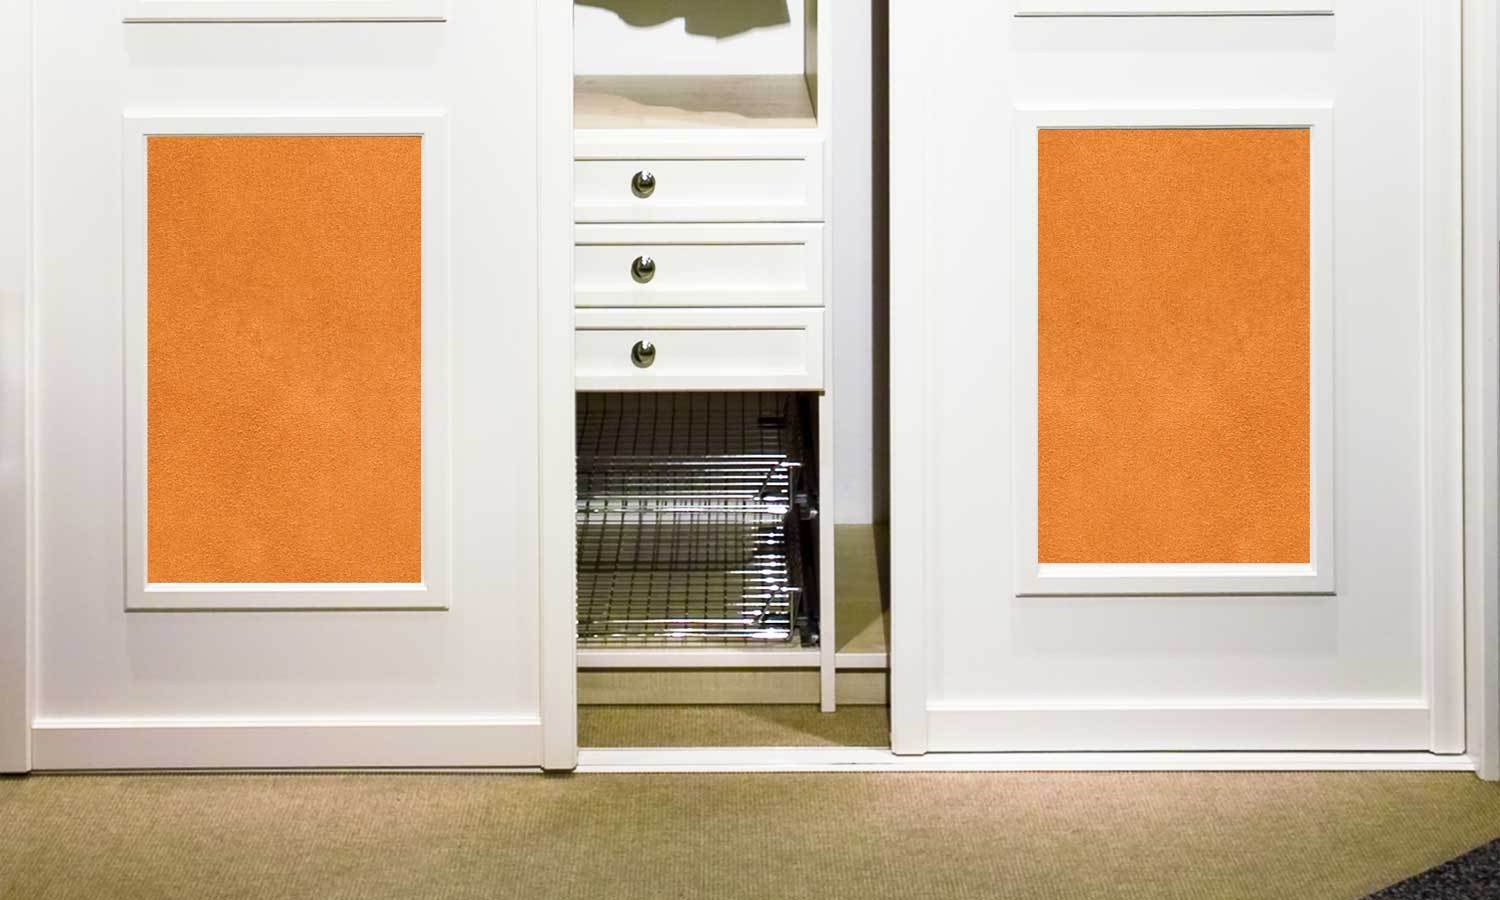 selbstklebende Folie für Möbel- orange Leder  PAT095 - life-decor.de